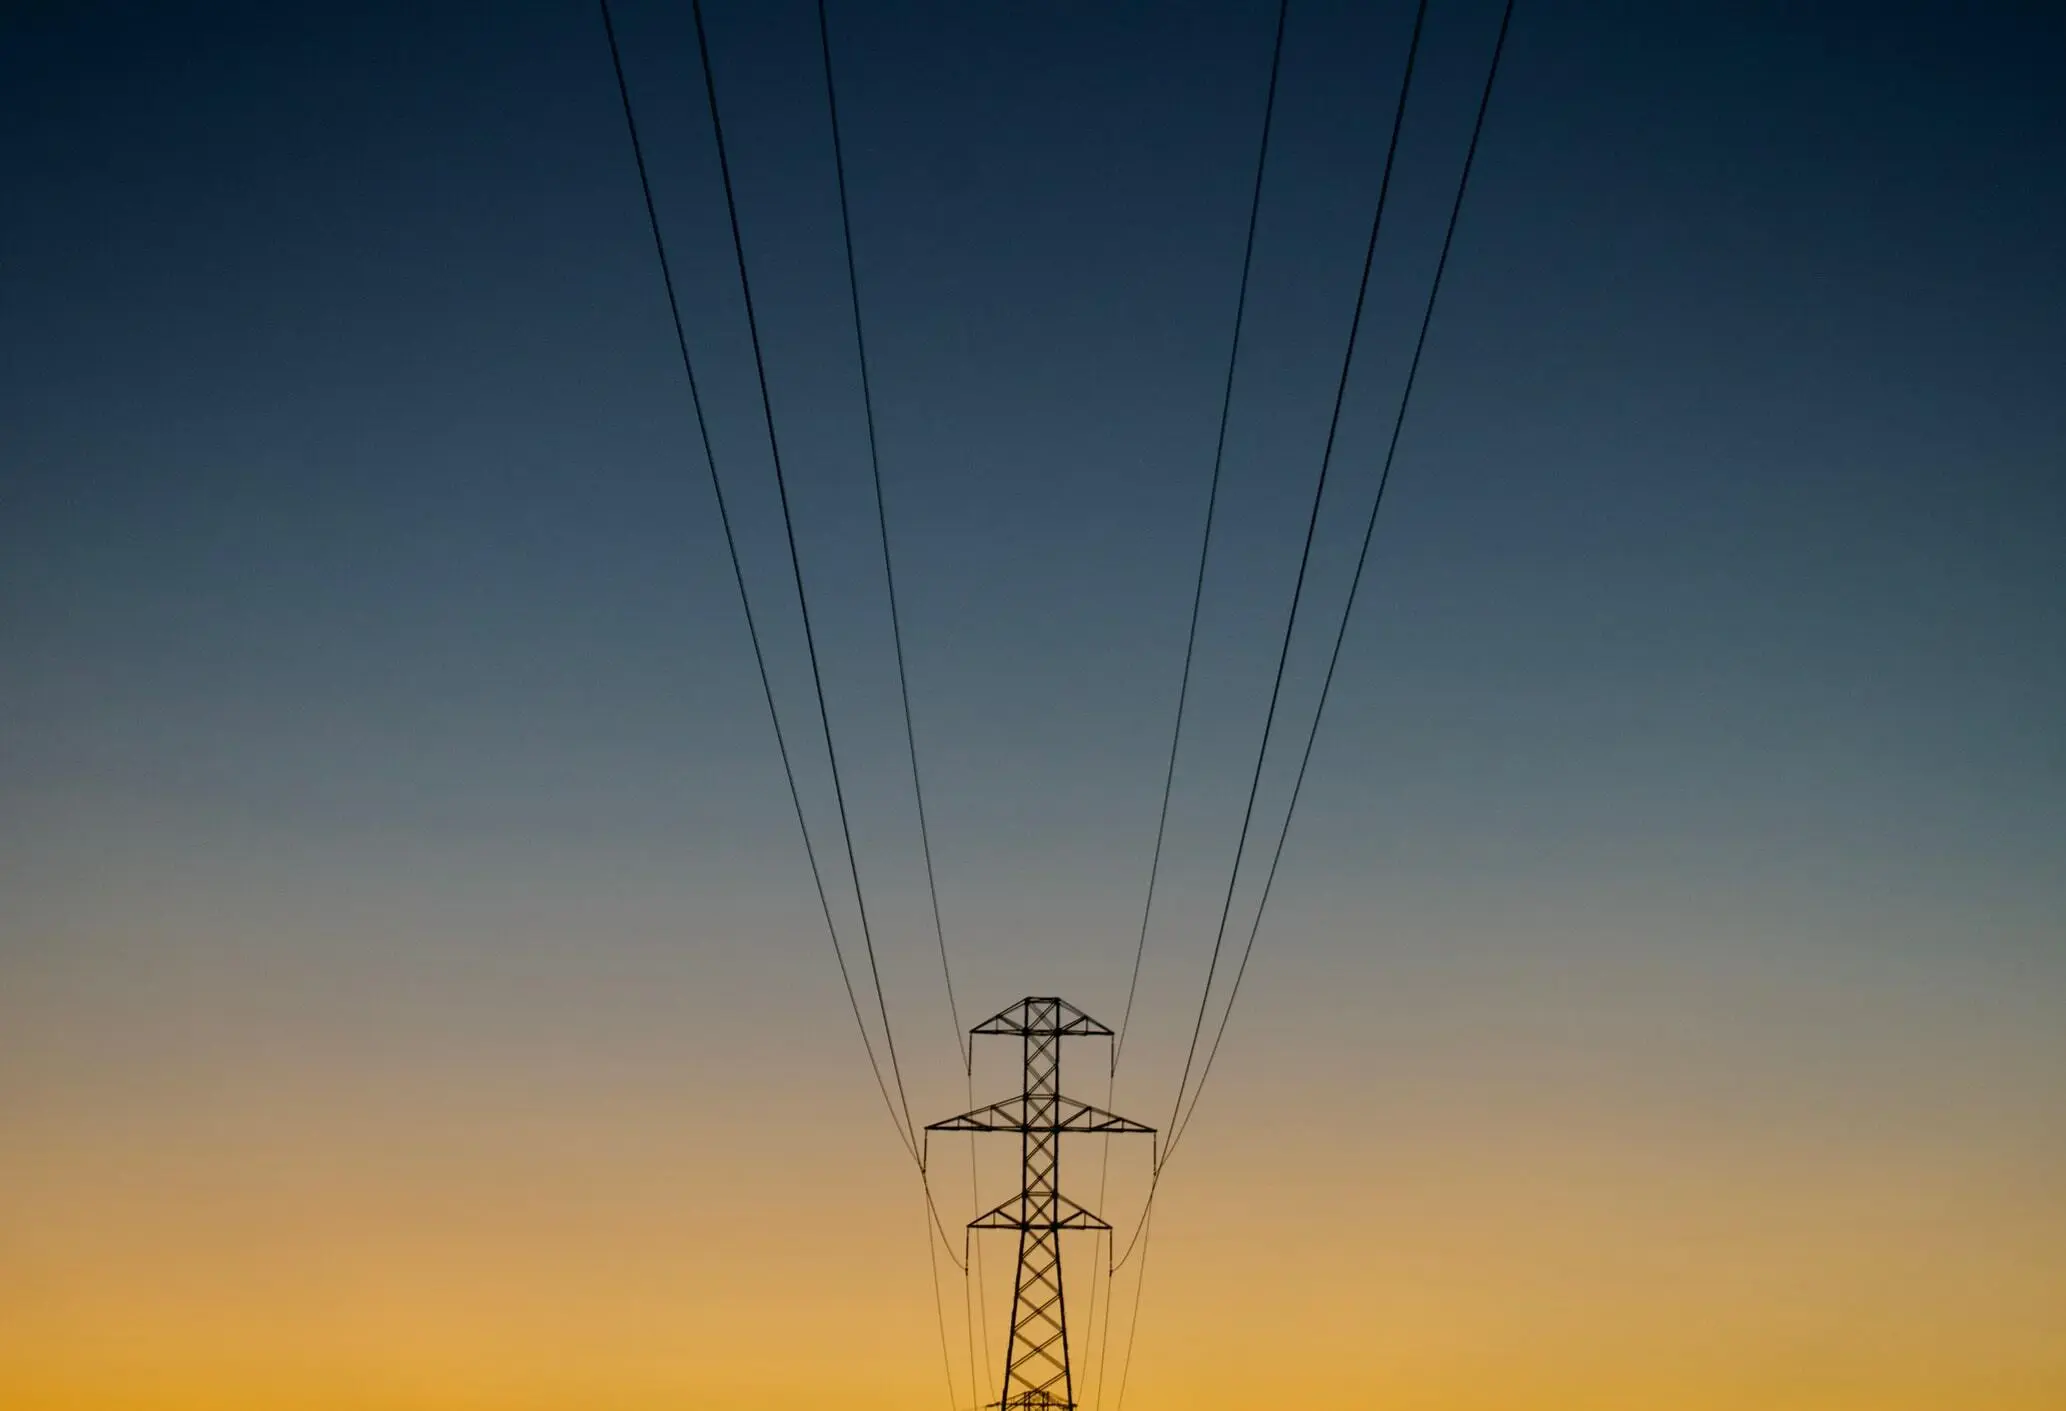 Power gird poles at sunset